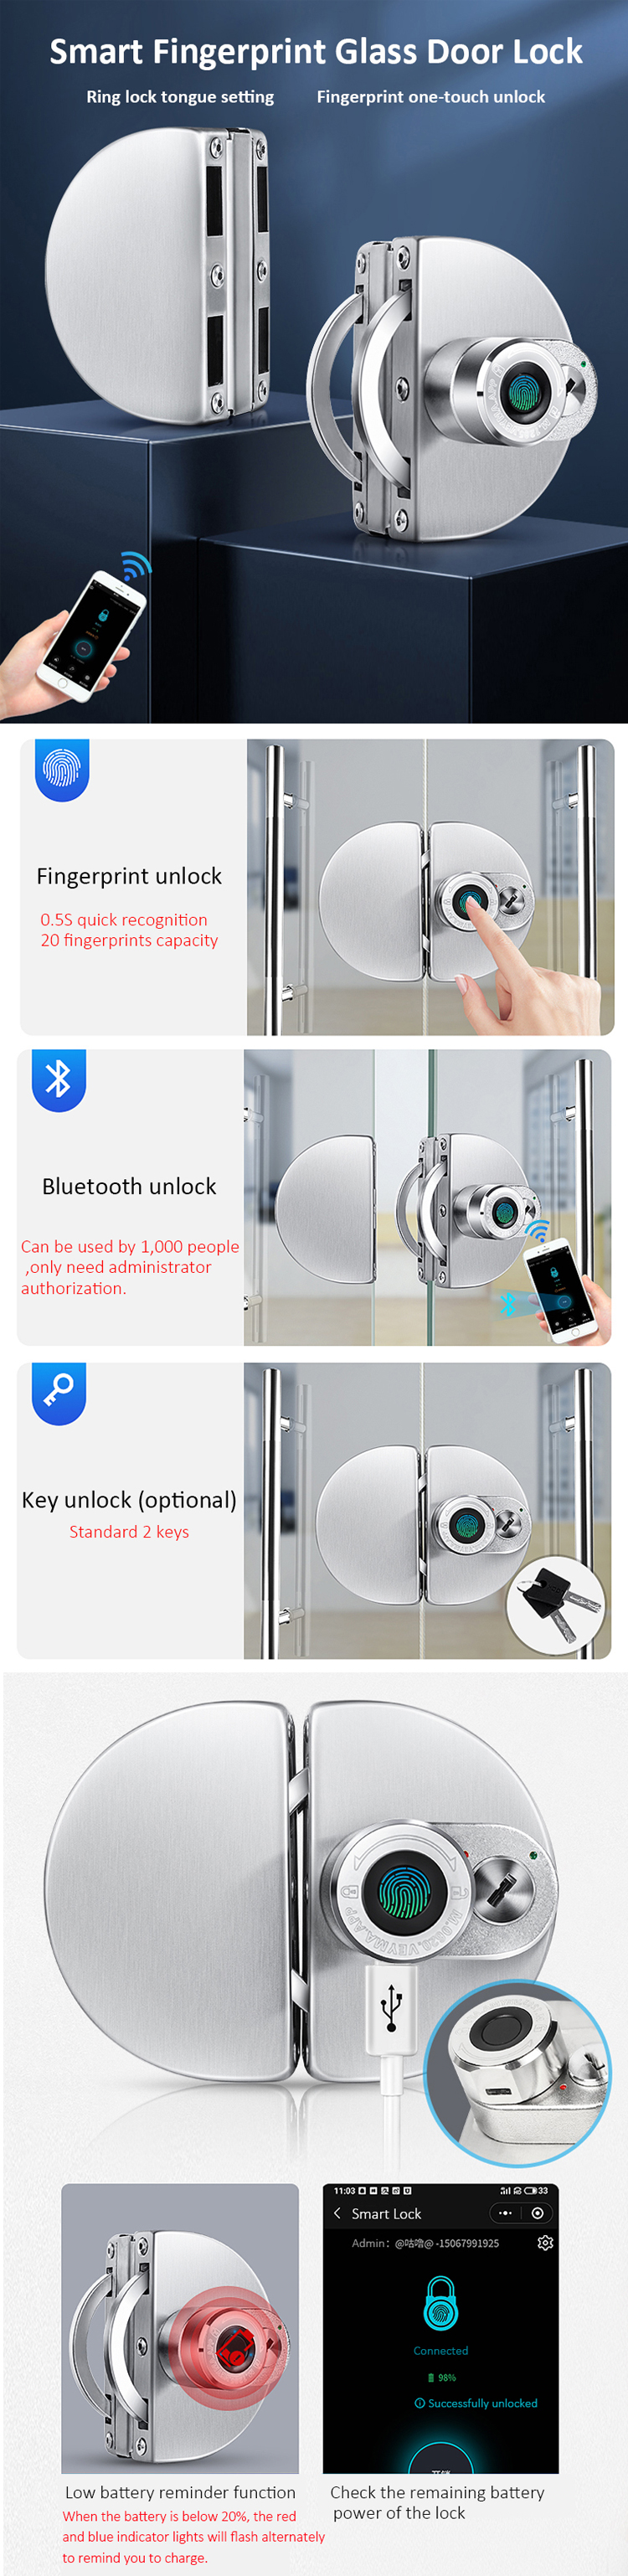 Smart fingerprint glass door lock